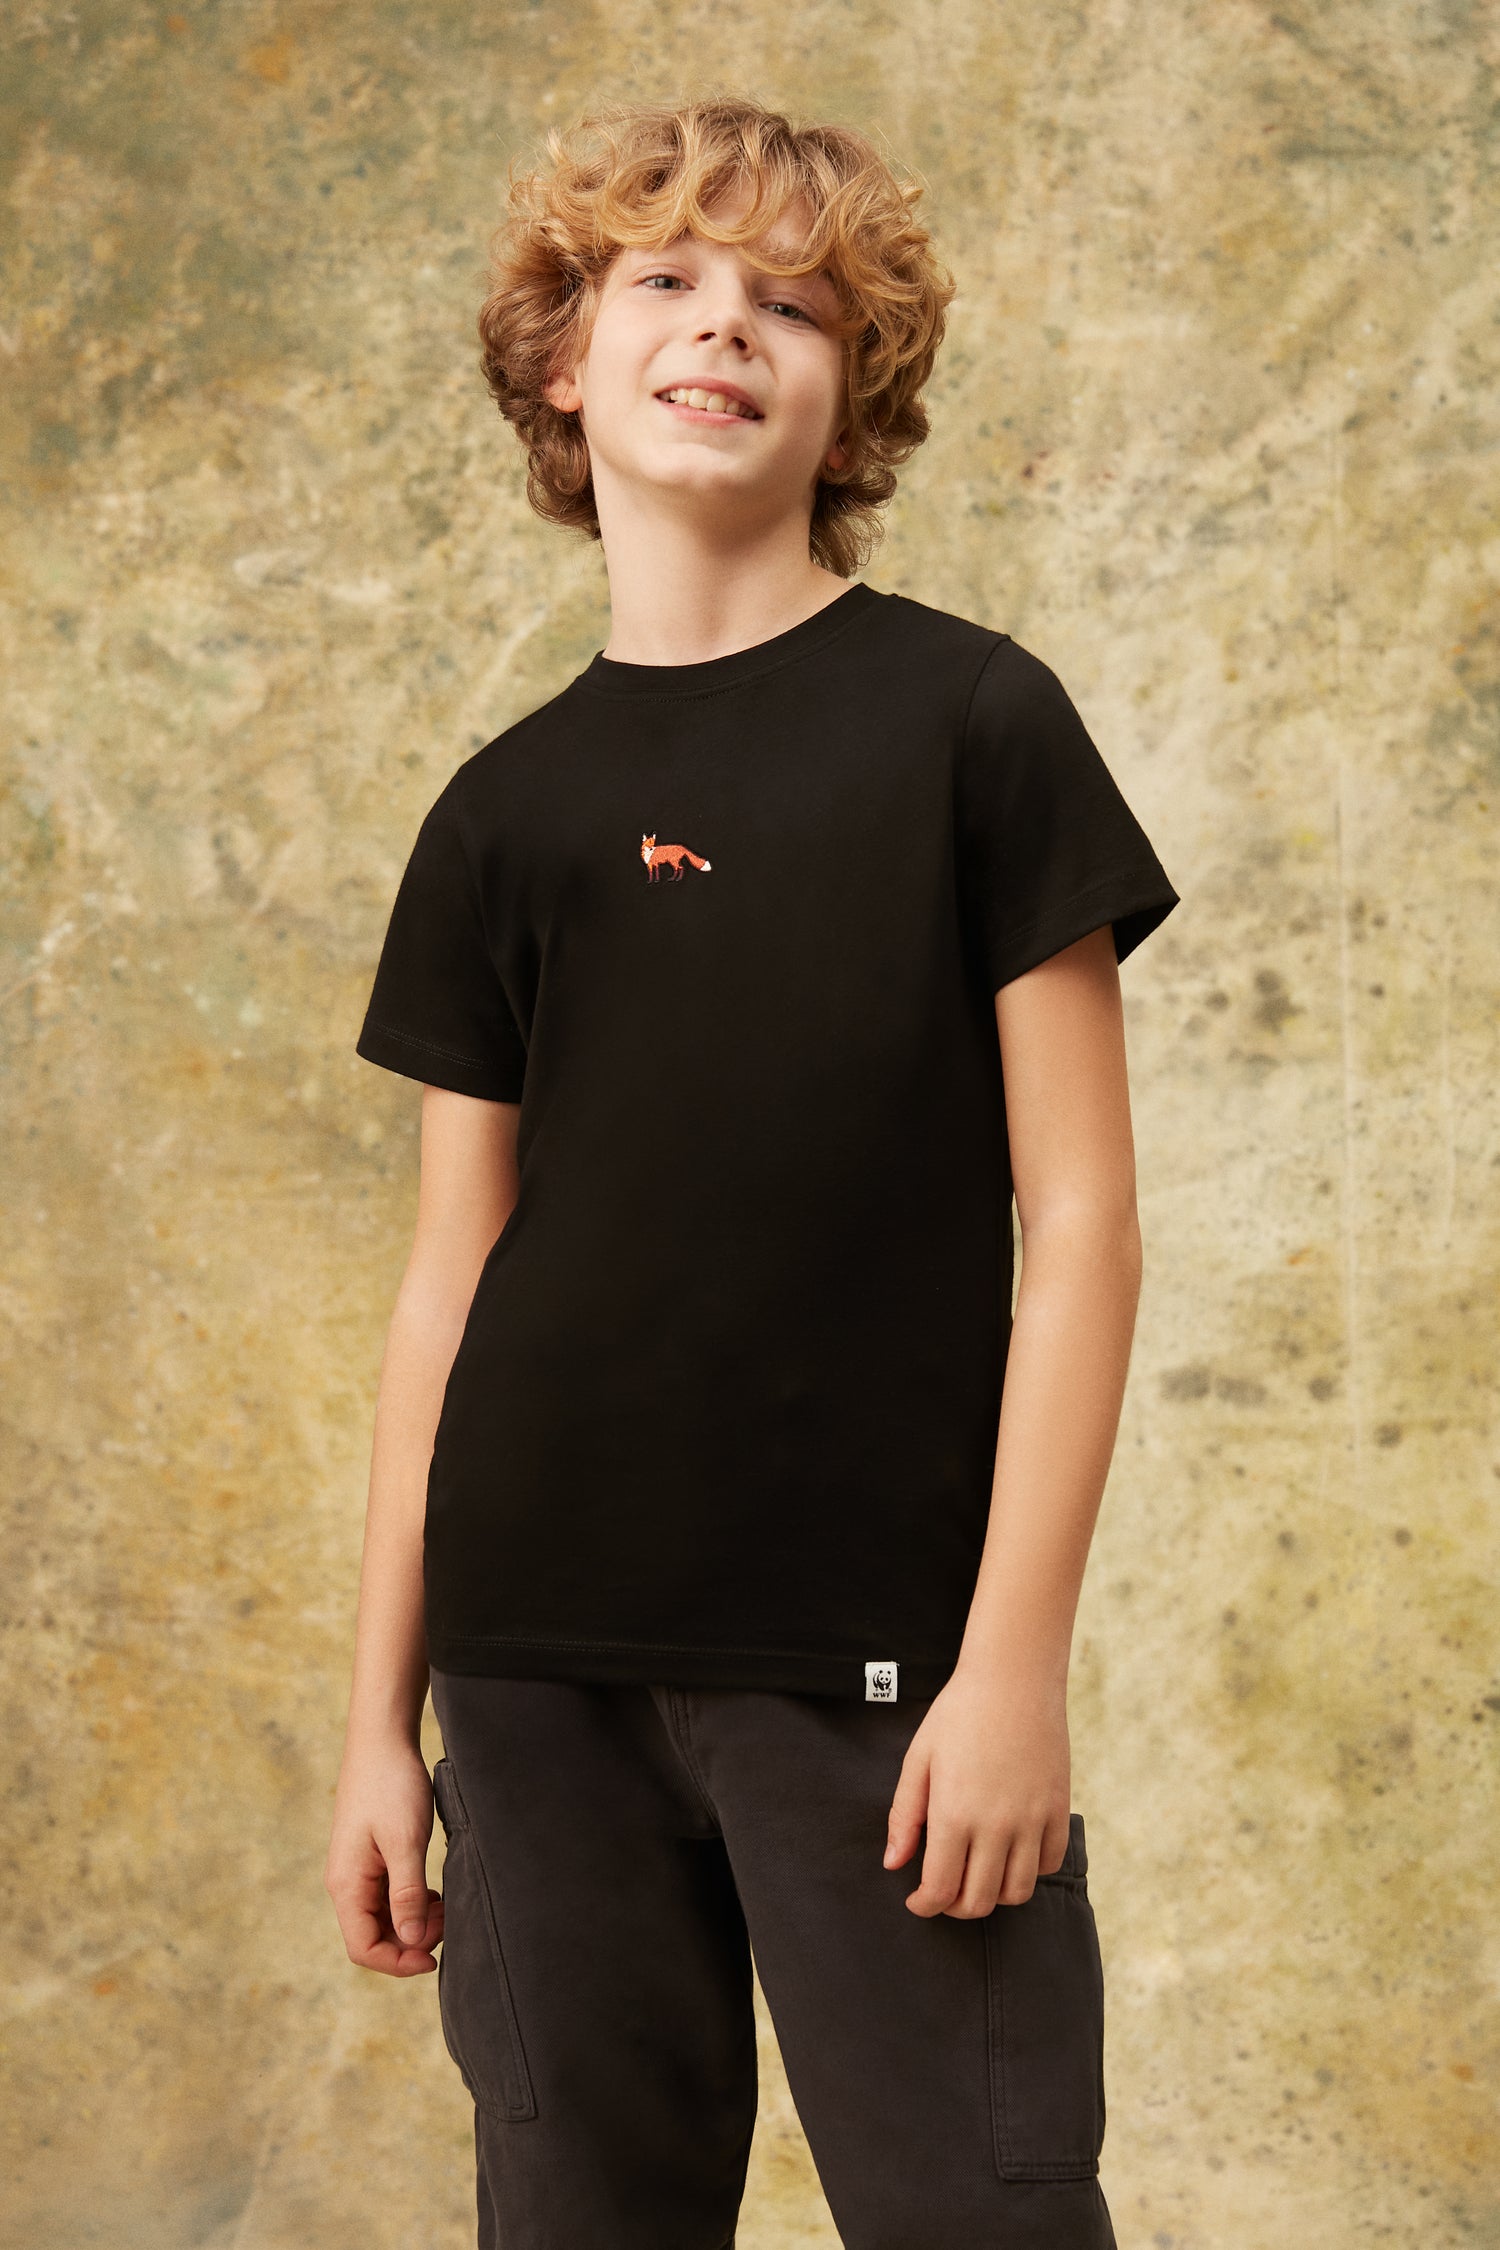 Kızıl Tilki Soft Supreme Çocuk T-shirt - Siyah